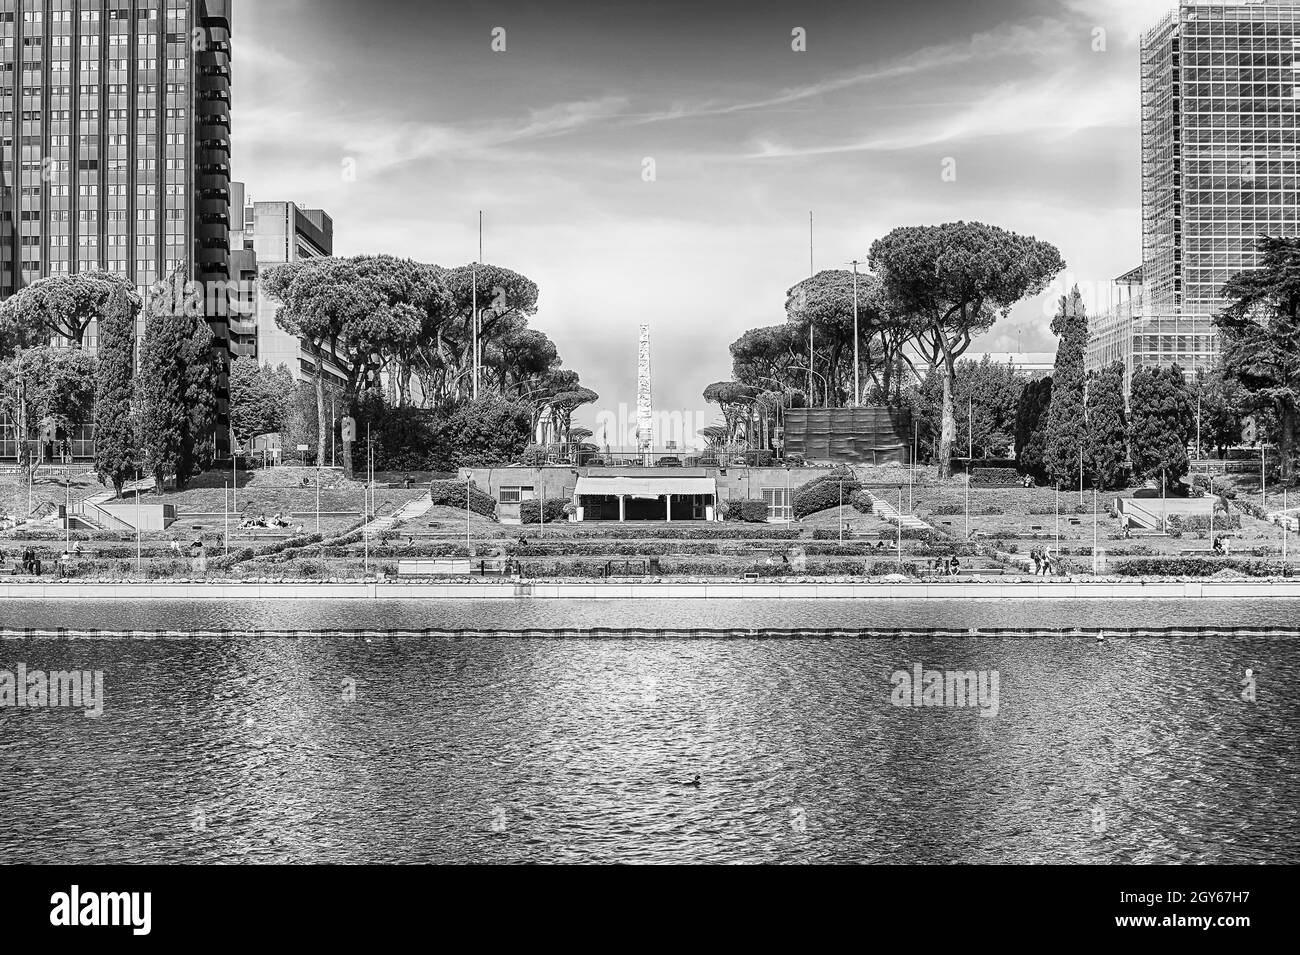 Vue panoramique sur le lac artificiel EUR, quartier moderne dans le sud de Rome, Italie Banque D'Images